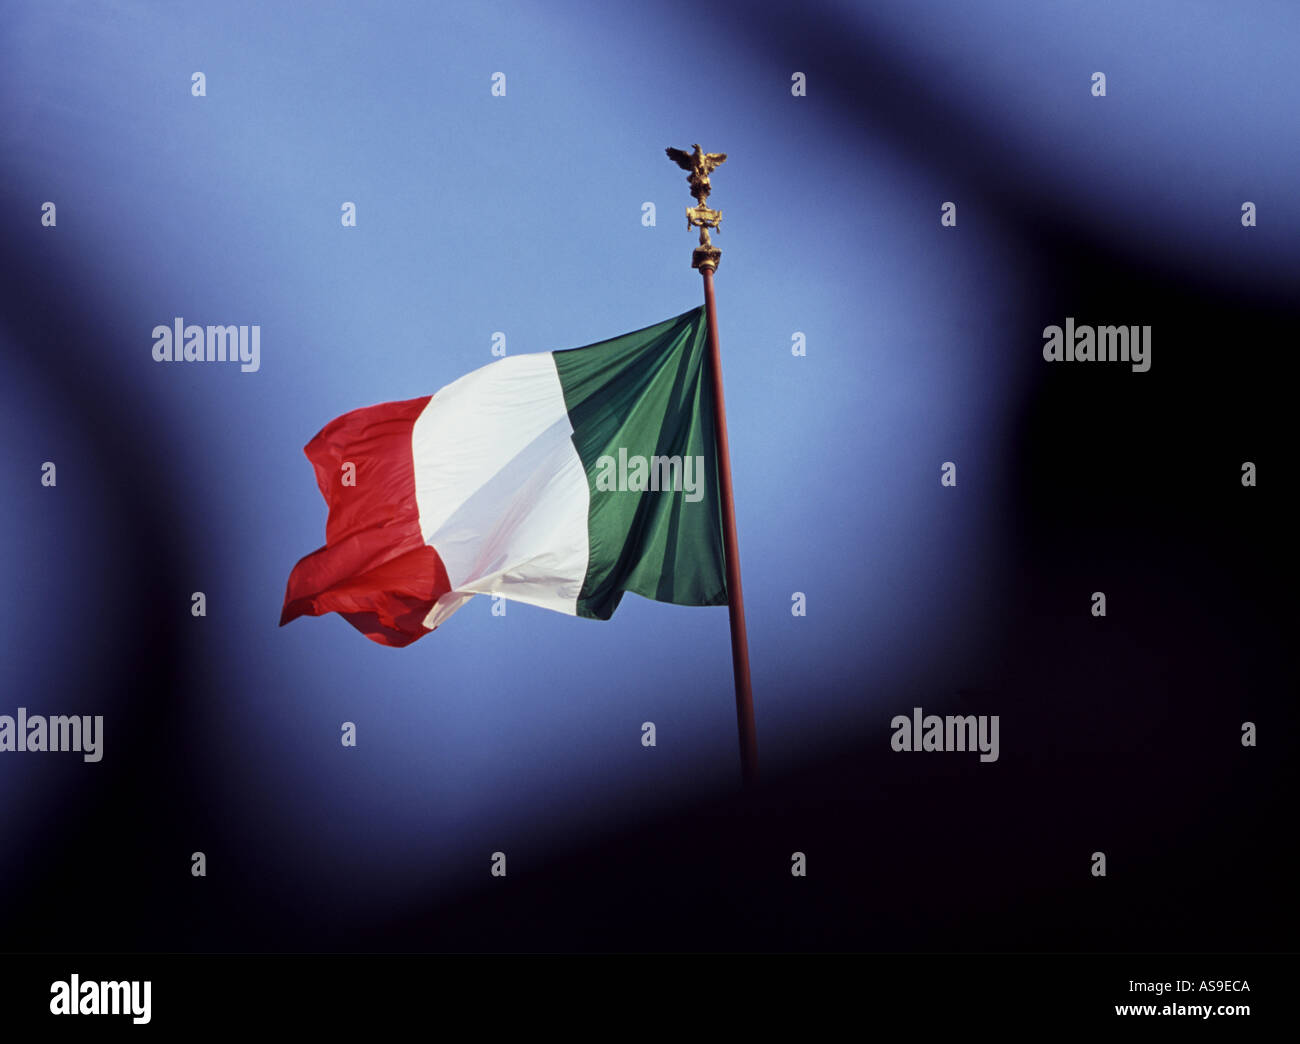 Le drapeau italien tricolor flying sur haut de II Vittoriano à Rome Italie Banque D'Images